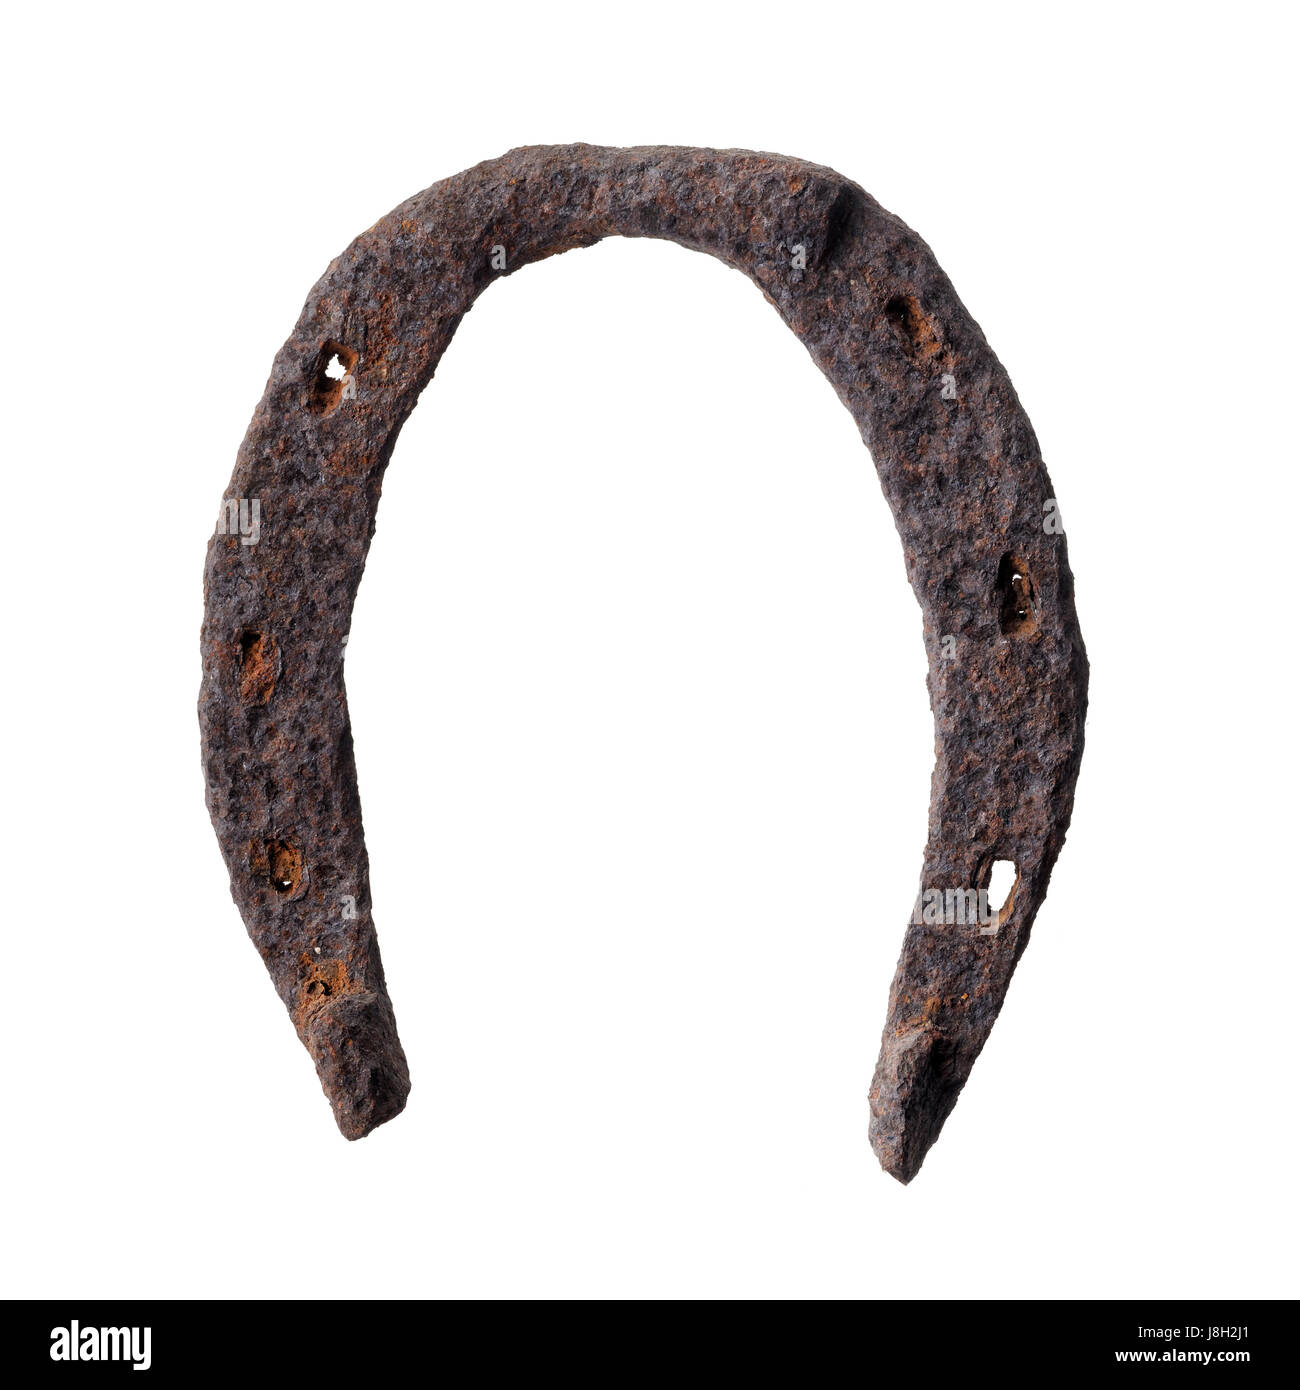 Oggetti isolati: molto vecchio arrugginito ferro di cavallo, isolati su sfondo bianco Foto Stock